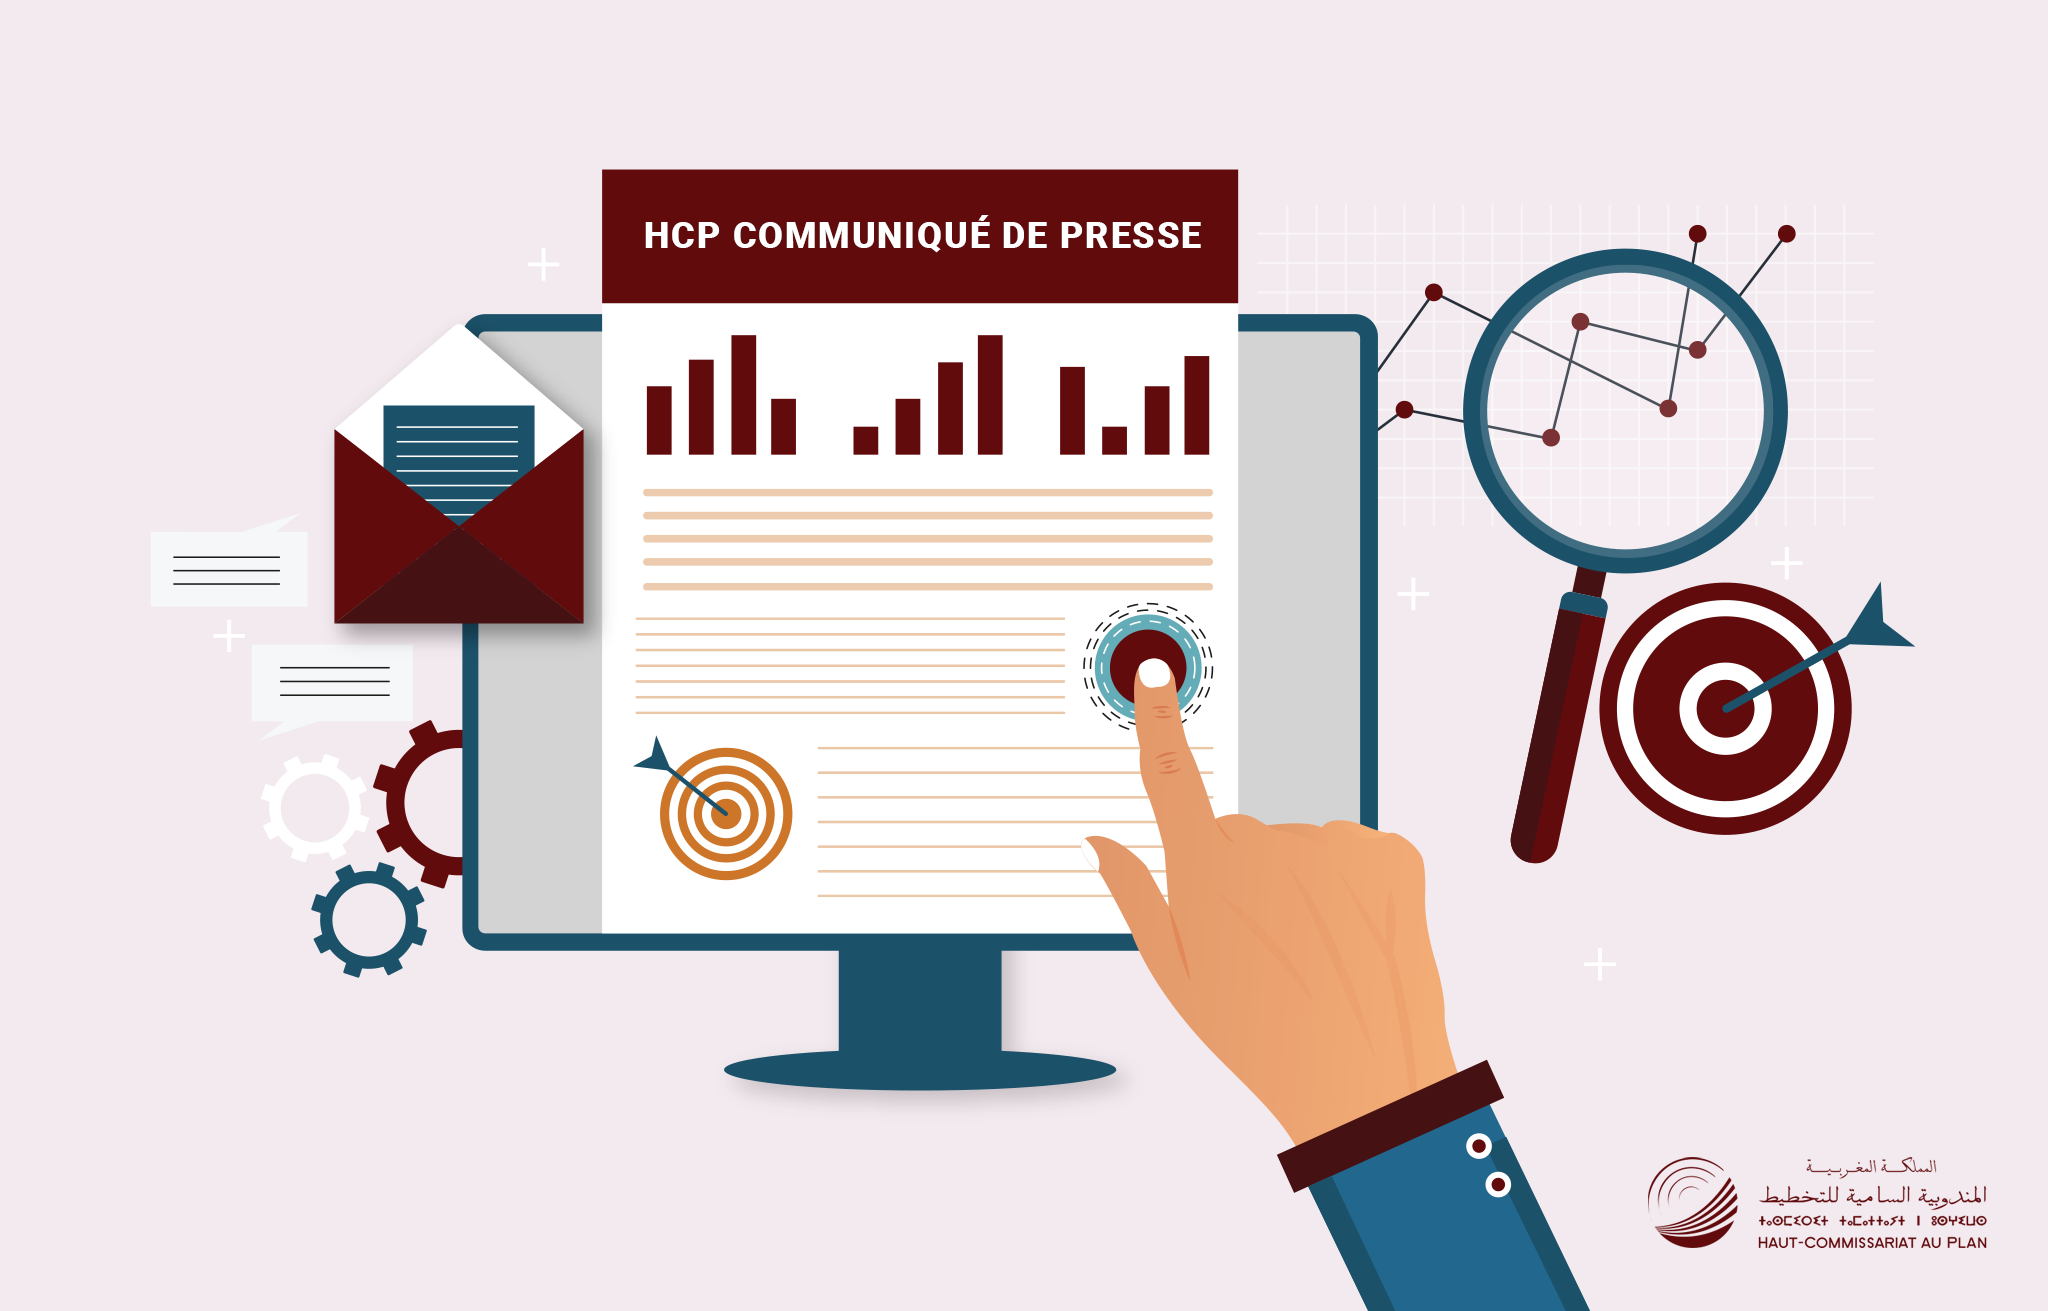 Le HCP lance la campagne de communication du RGPH 2024 et présente les bases cartographiques et statistiques d’une géographie humaine et économique du Maroc